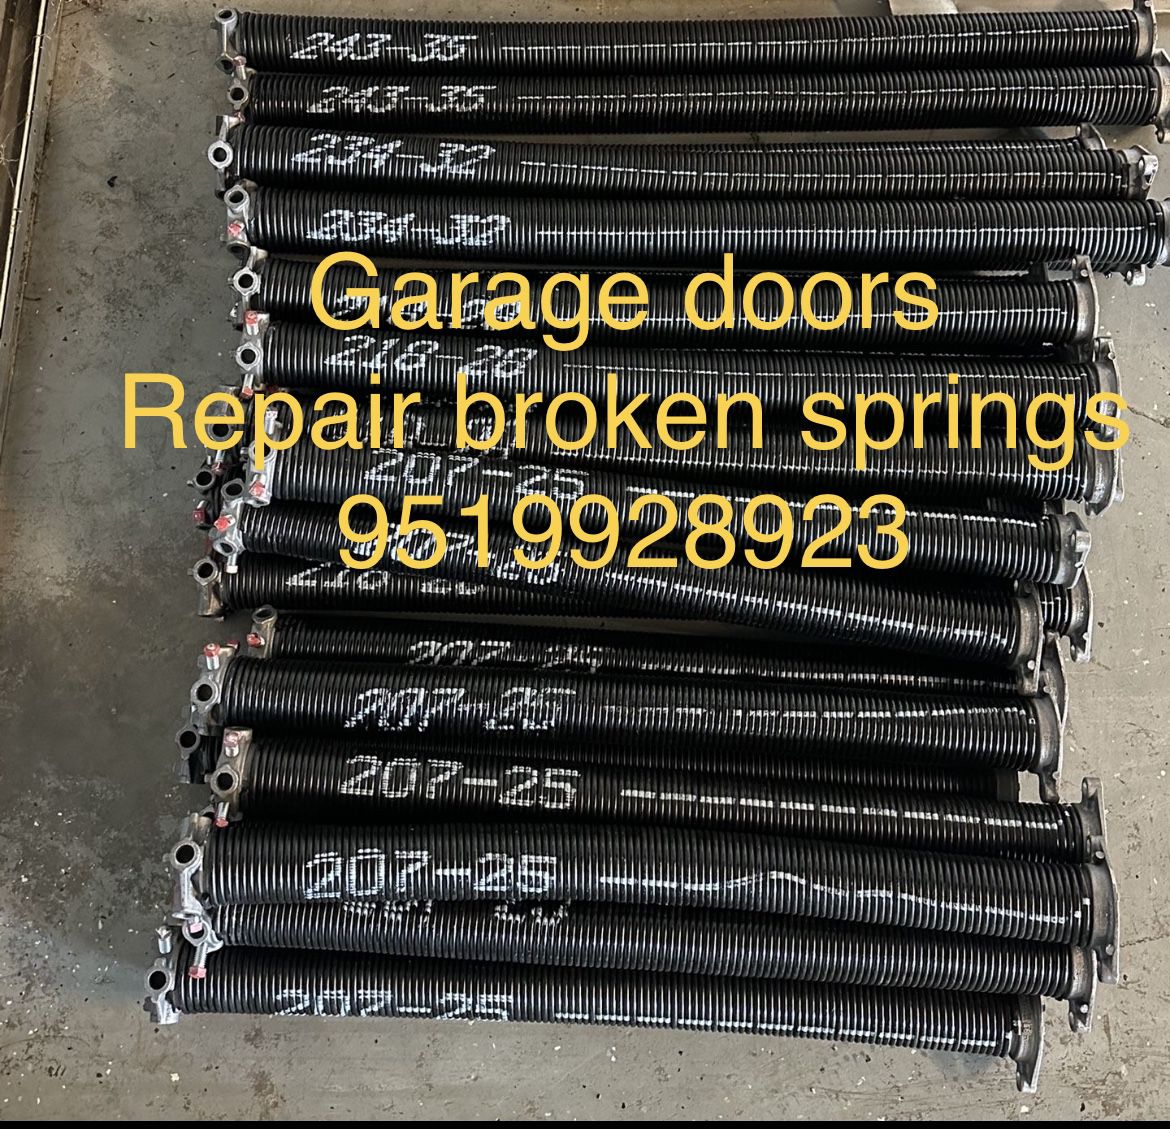 Garage Door Springs’s 